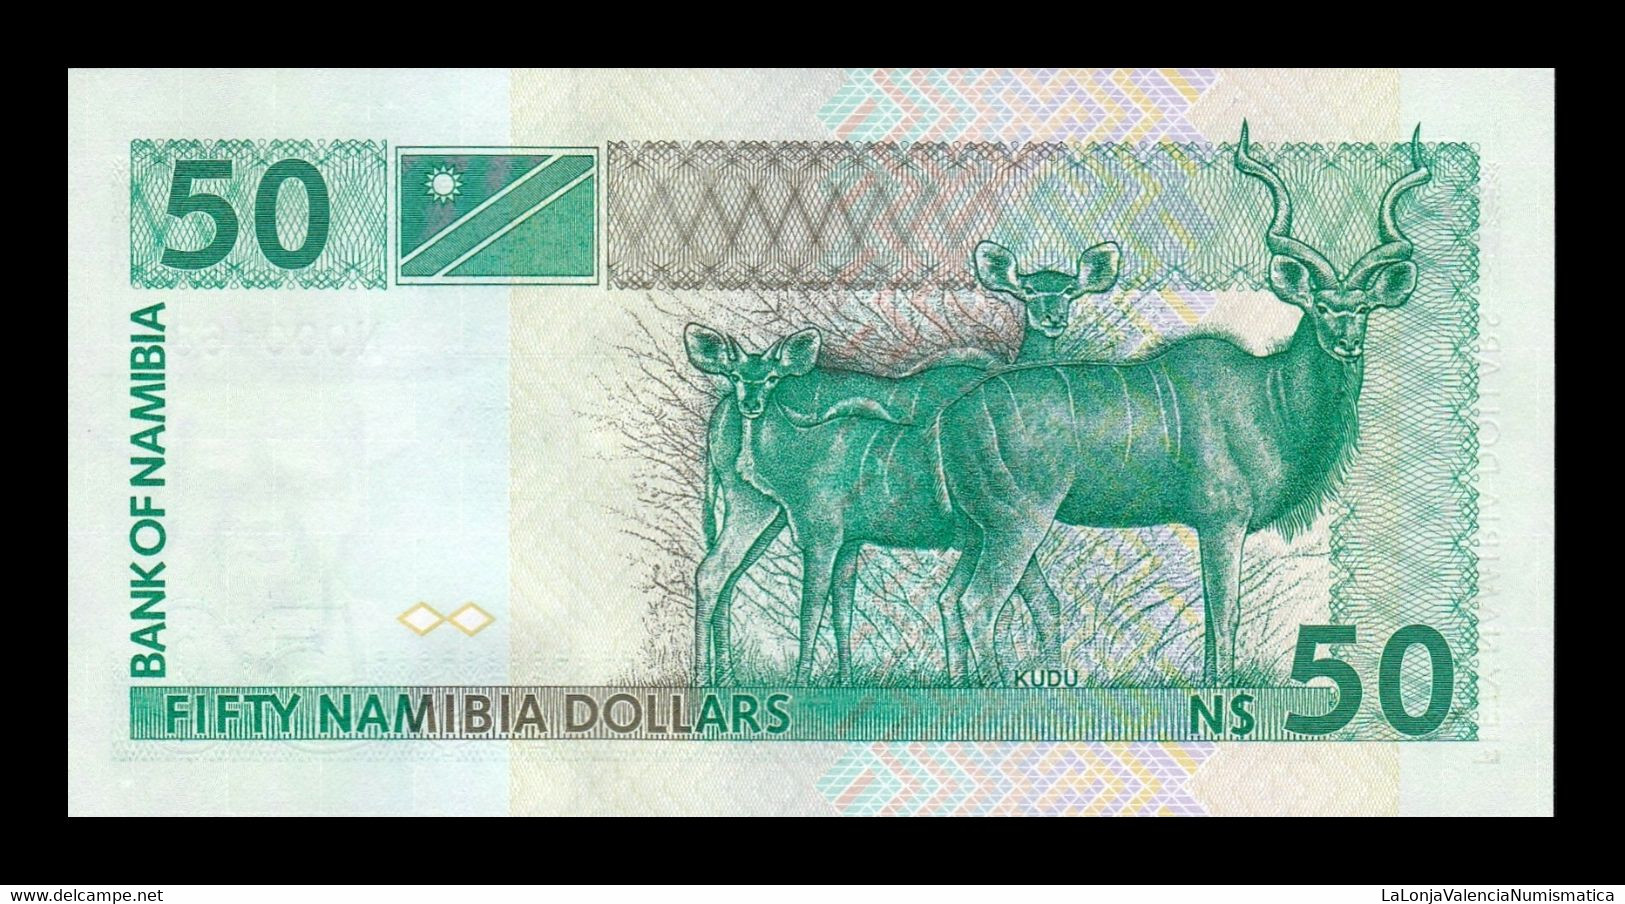 Namibia 50 Dollars 1993 Pick 2 Low Serial T.683 SC UNC - Namibie